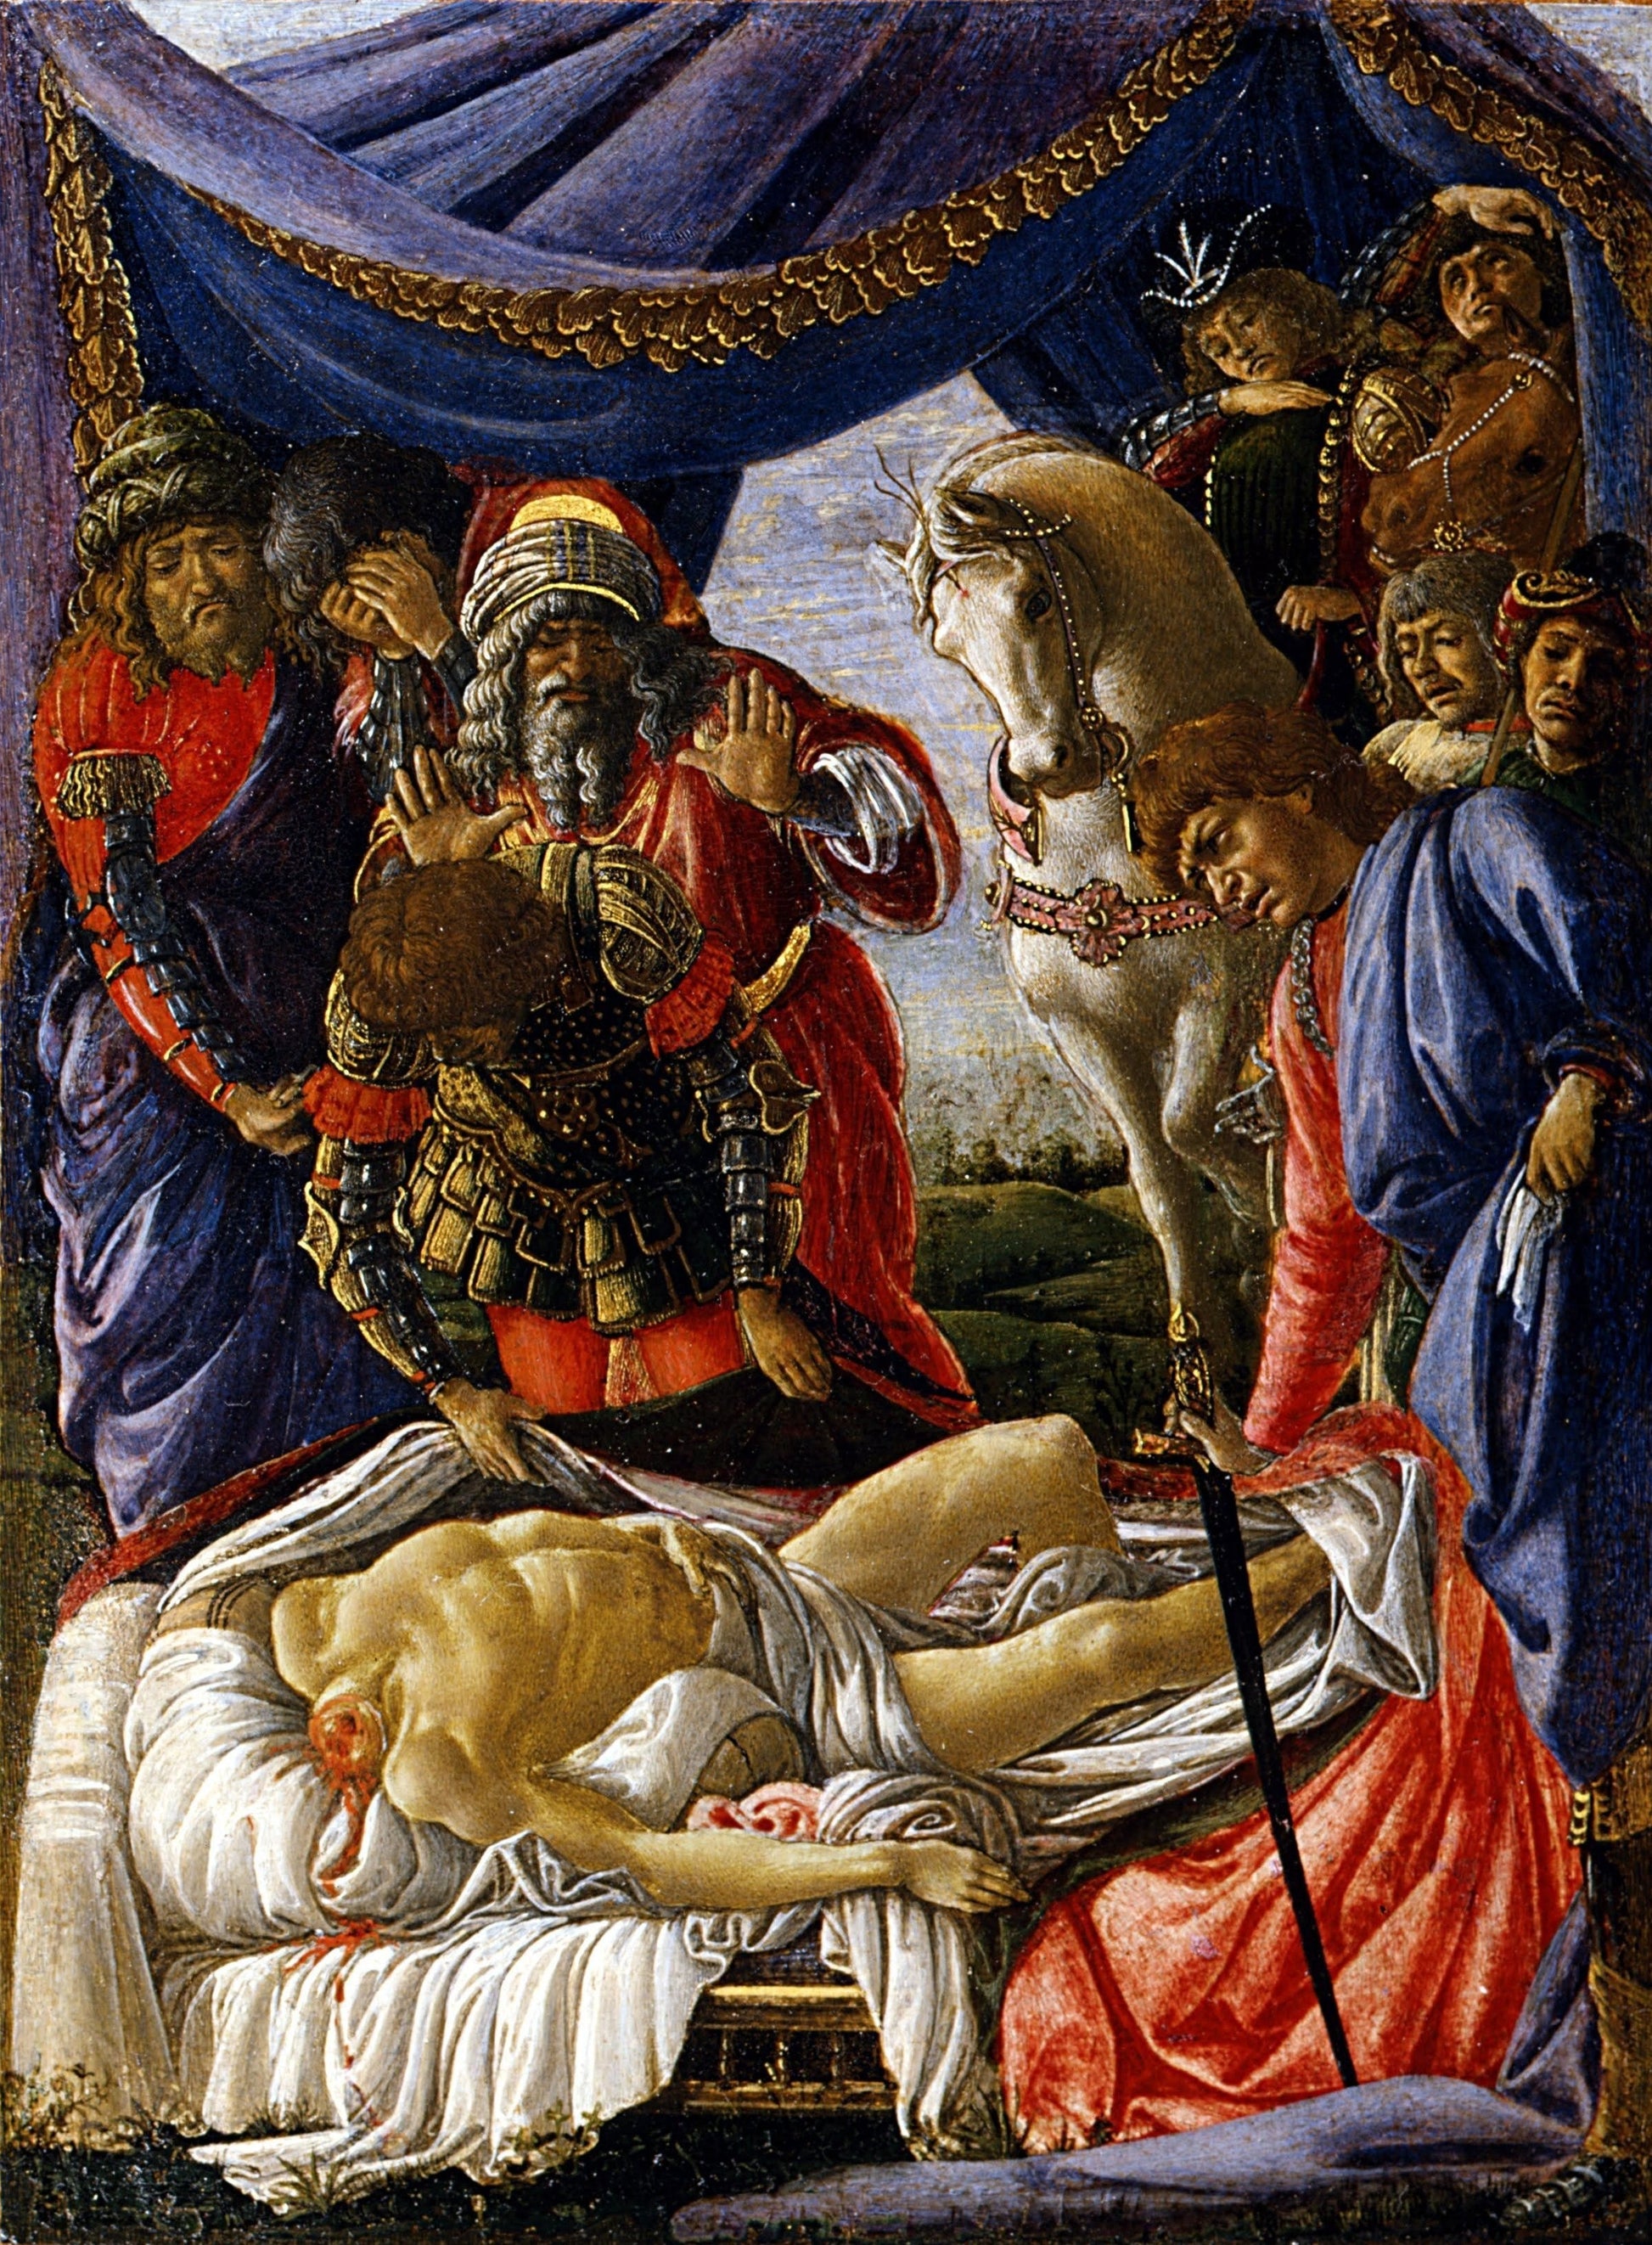 Découverte d'Holopherne - Sandro Botticelli